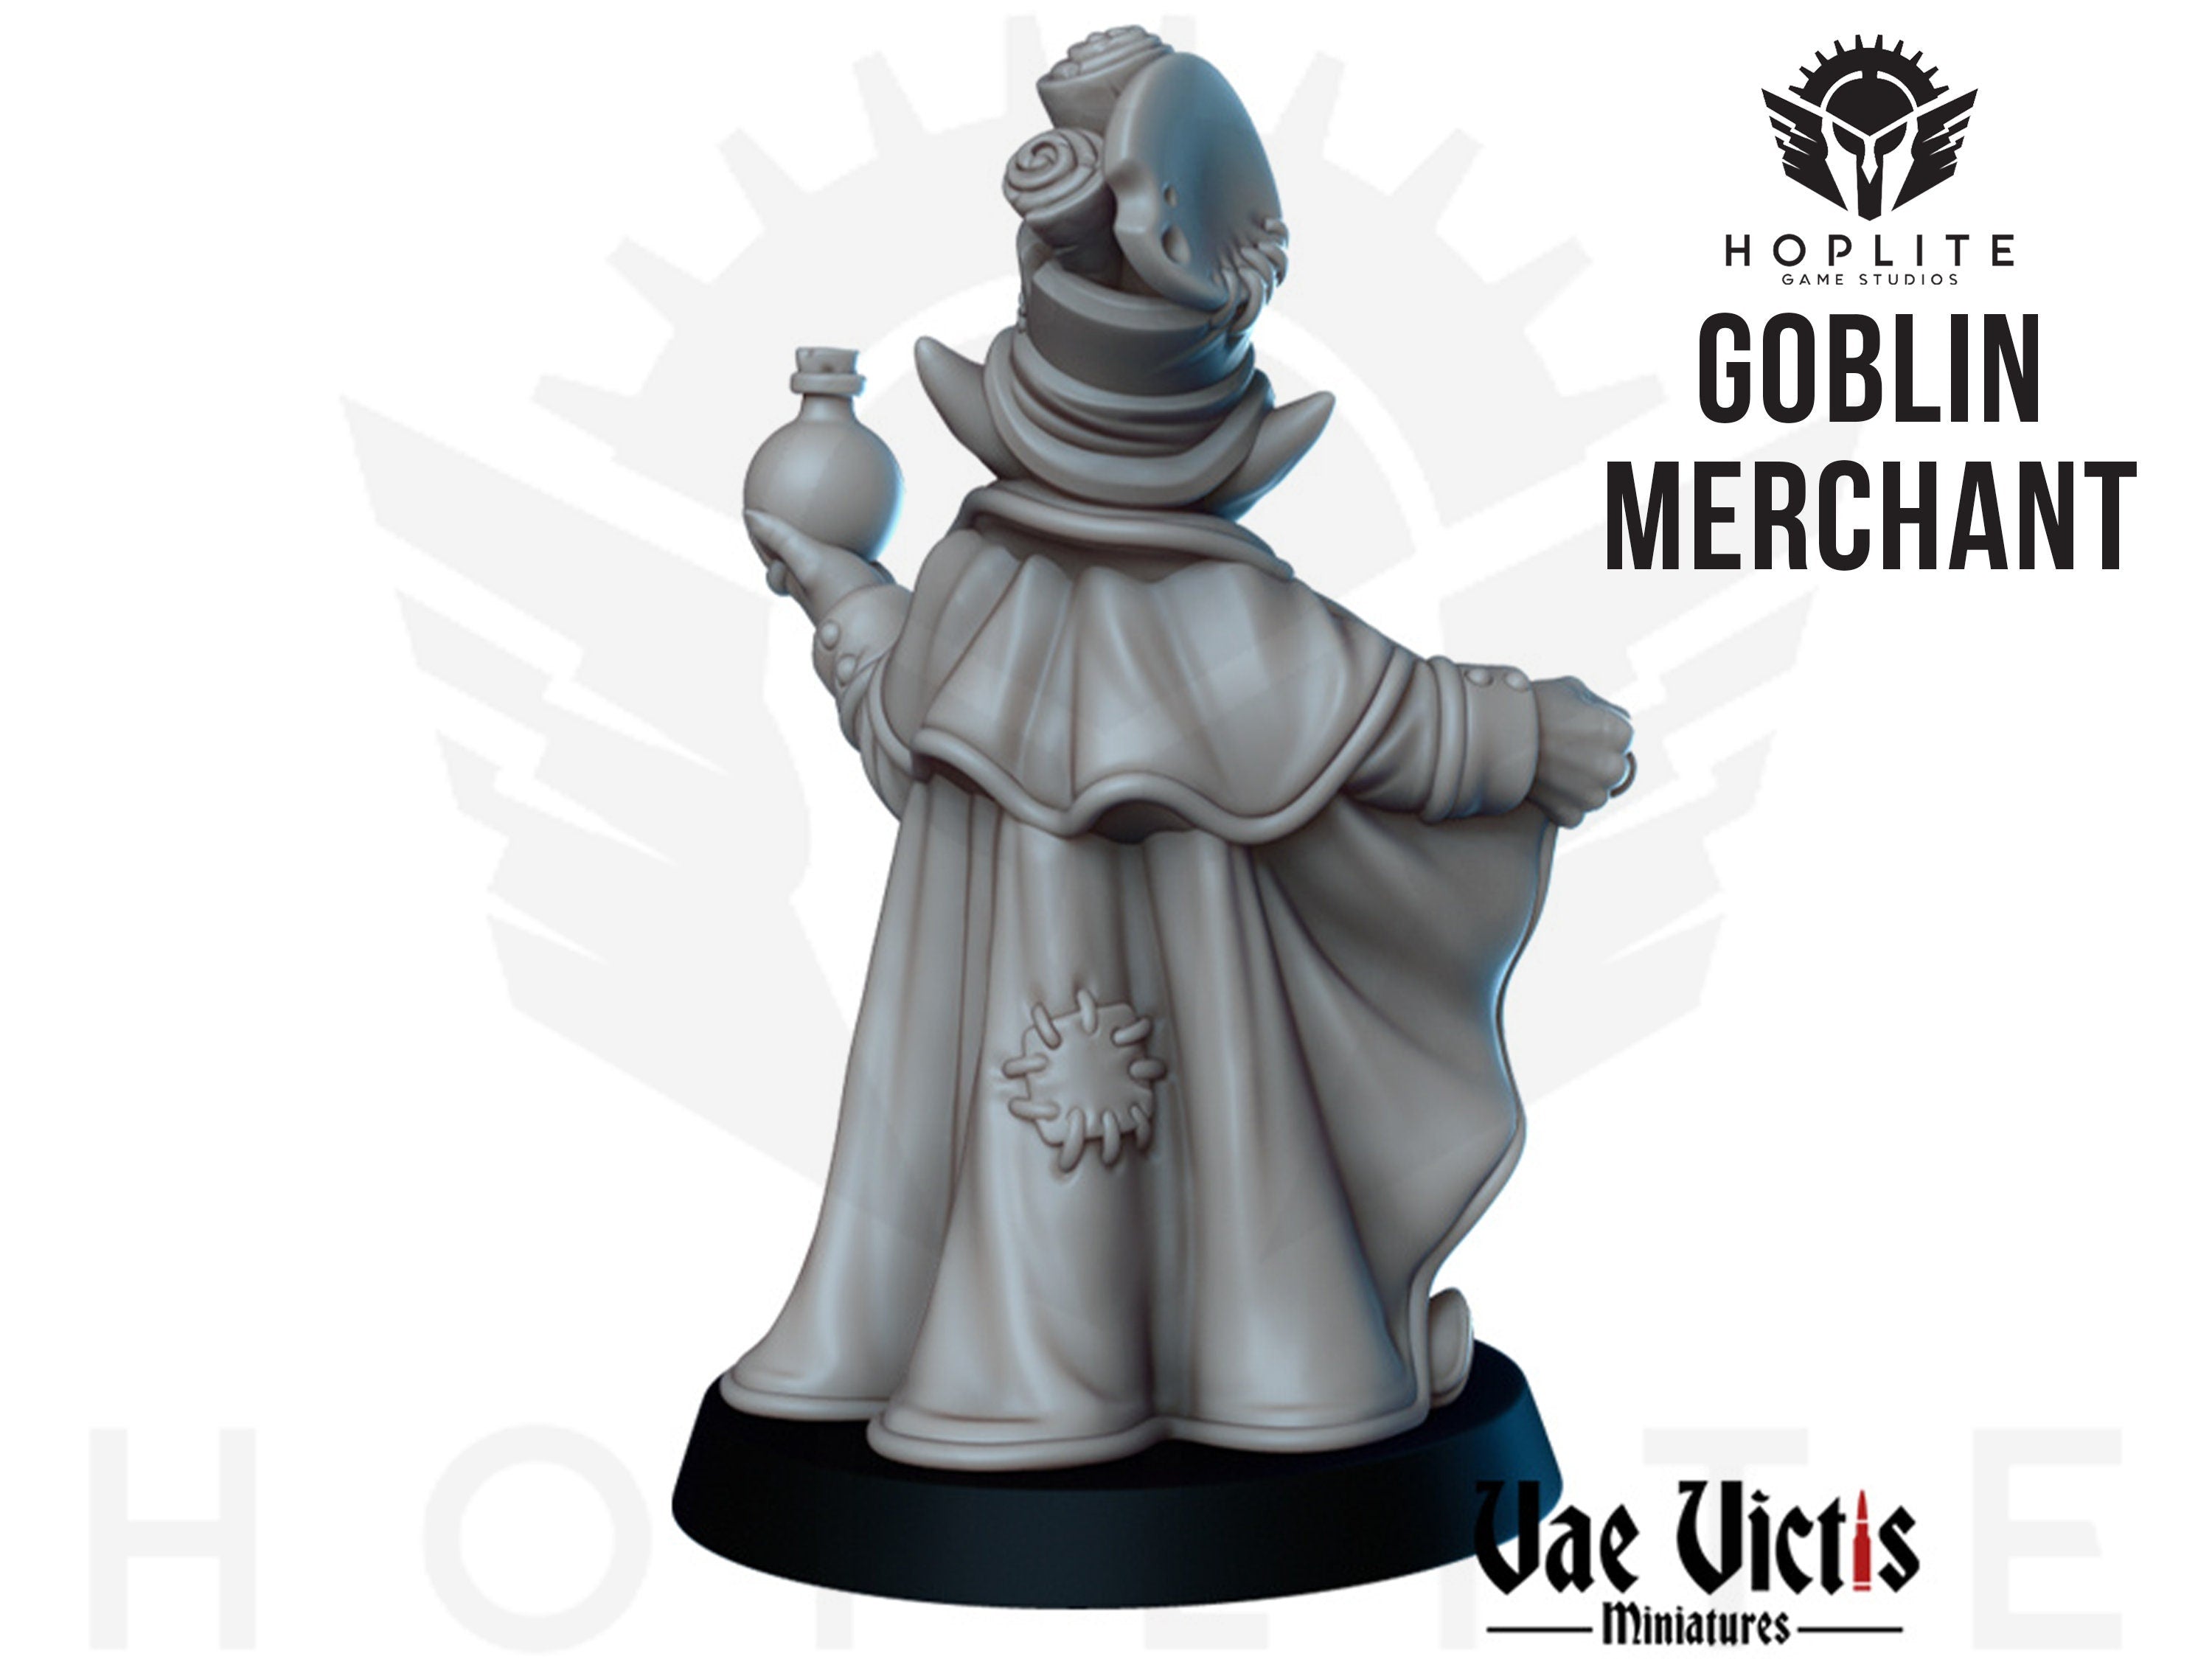 The Goblin Merchant